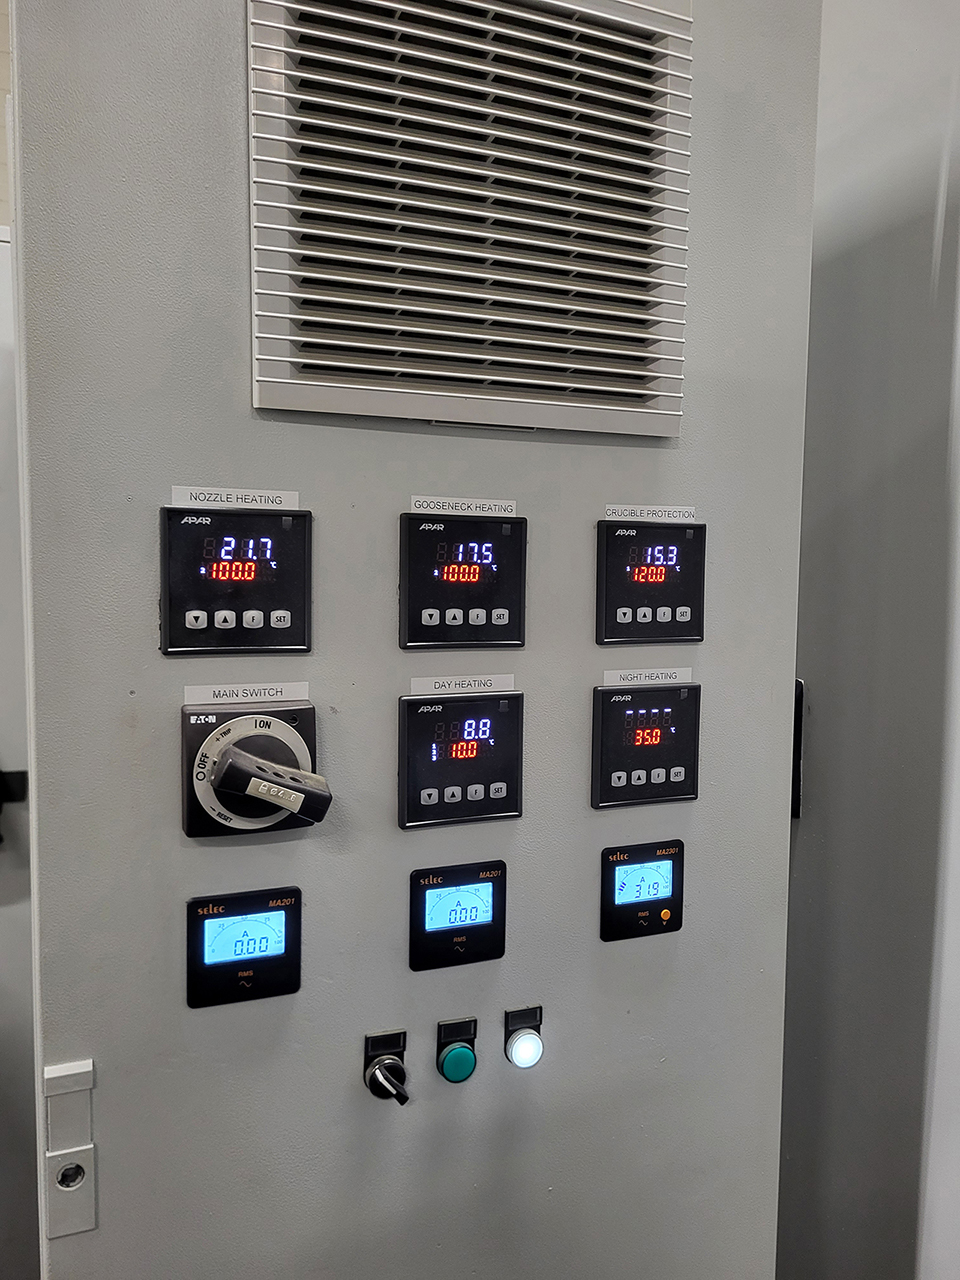 Machine de coulée sous pression à chambre chaude Frech DAW 125 F WK1454, partiellement révisée